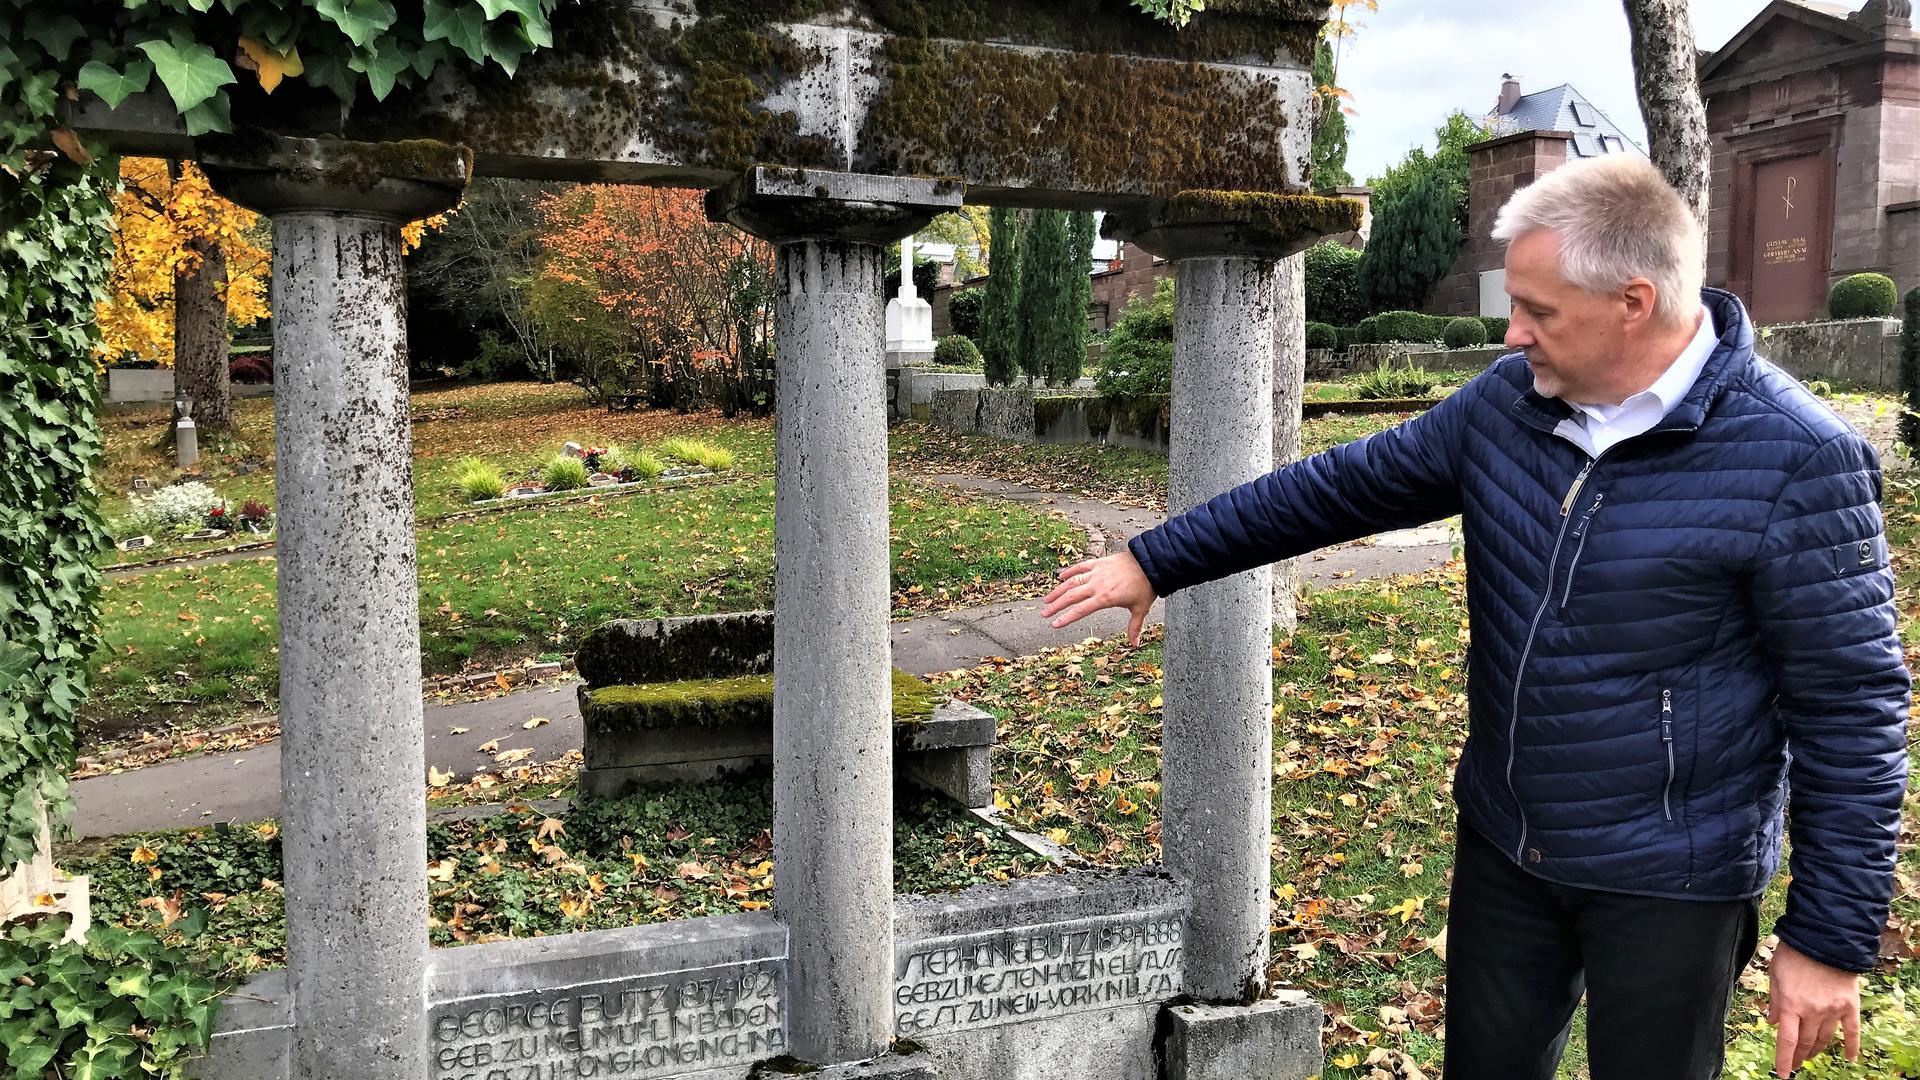  Friedhofschef Frank Geyer zeigt auf dem Hauptfriedhof Baden-Baden  ein Grabmal, das ein Pate instand gesetzt hat. Als Gegenleistung durfte er eine Tafel mit seinem Namen auf der Vorderseite anbringen lassen. 